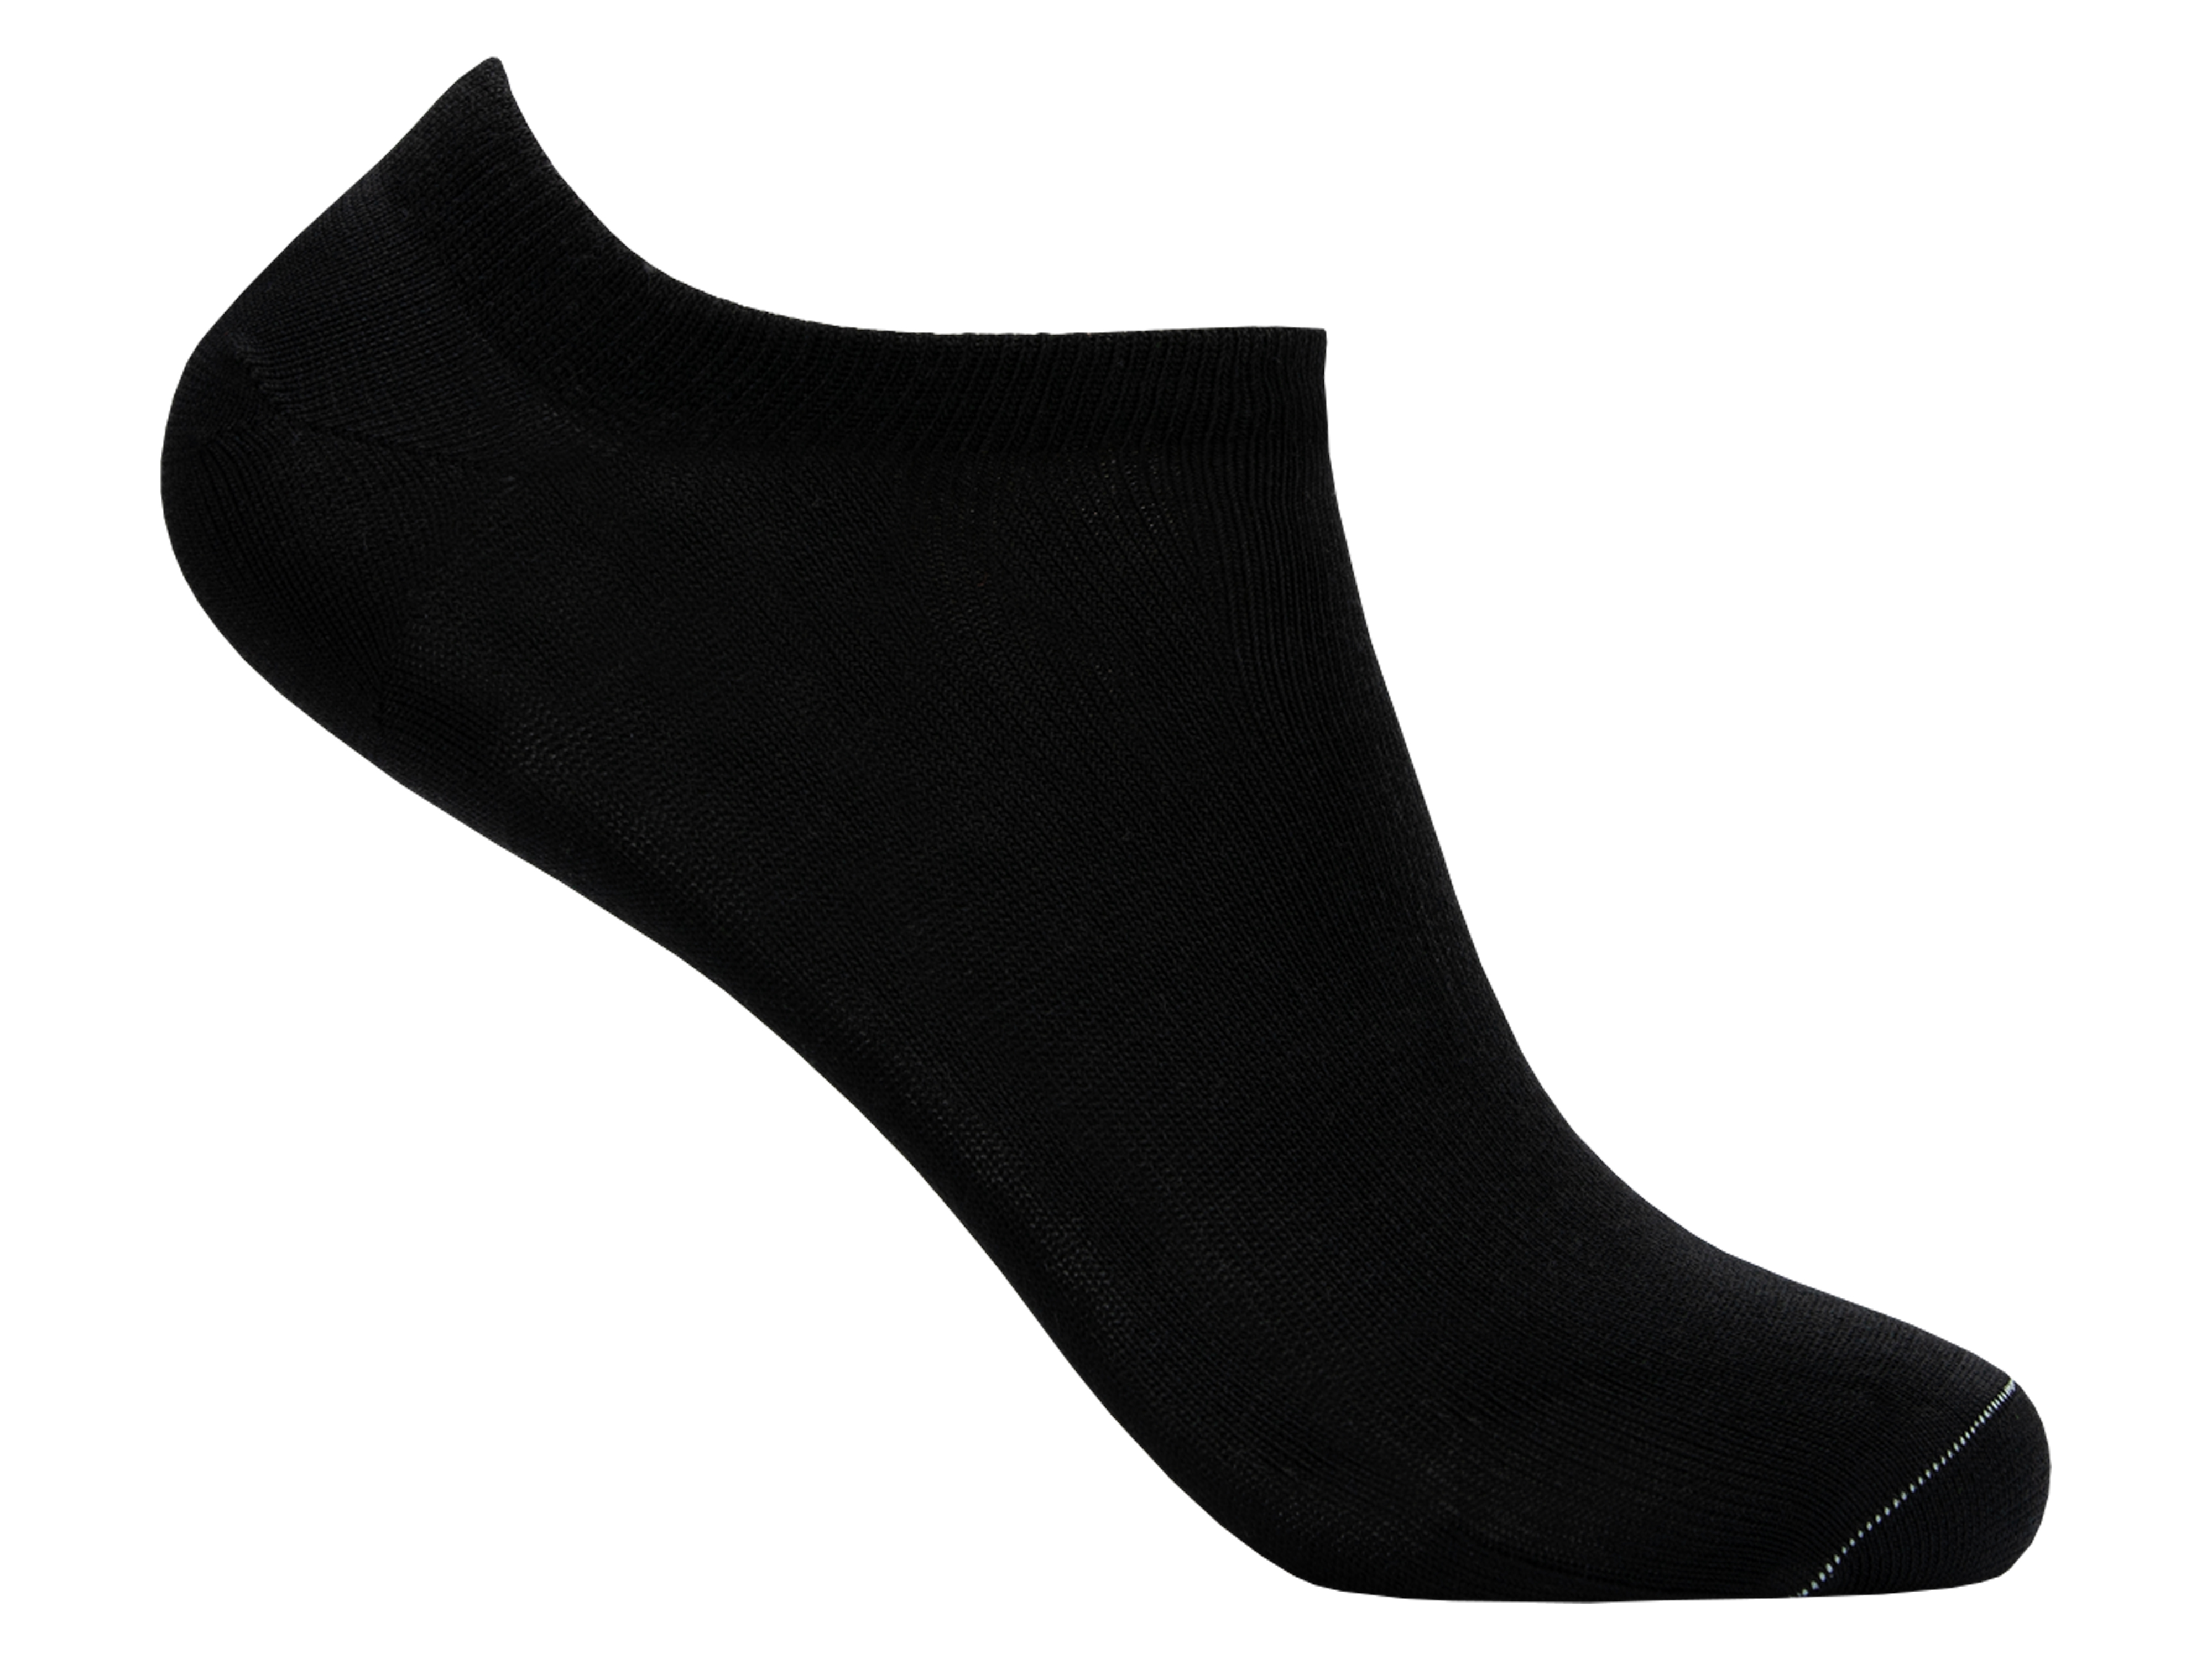 LY by Tufte Low Sock  Black, Størrelse 36-40, 1 par.